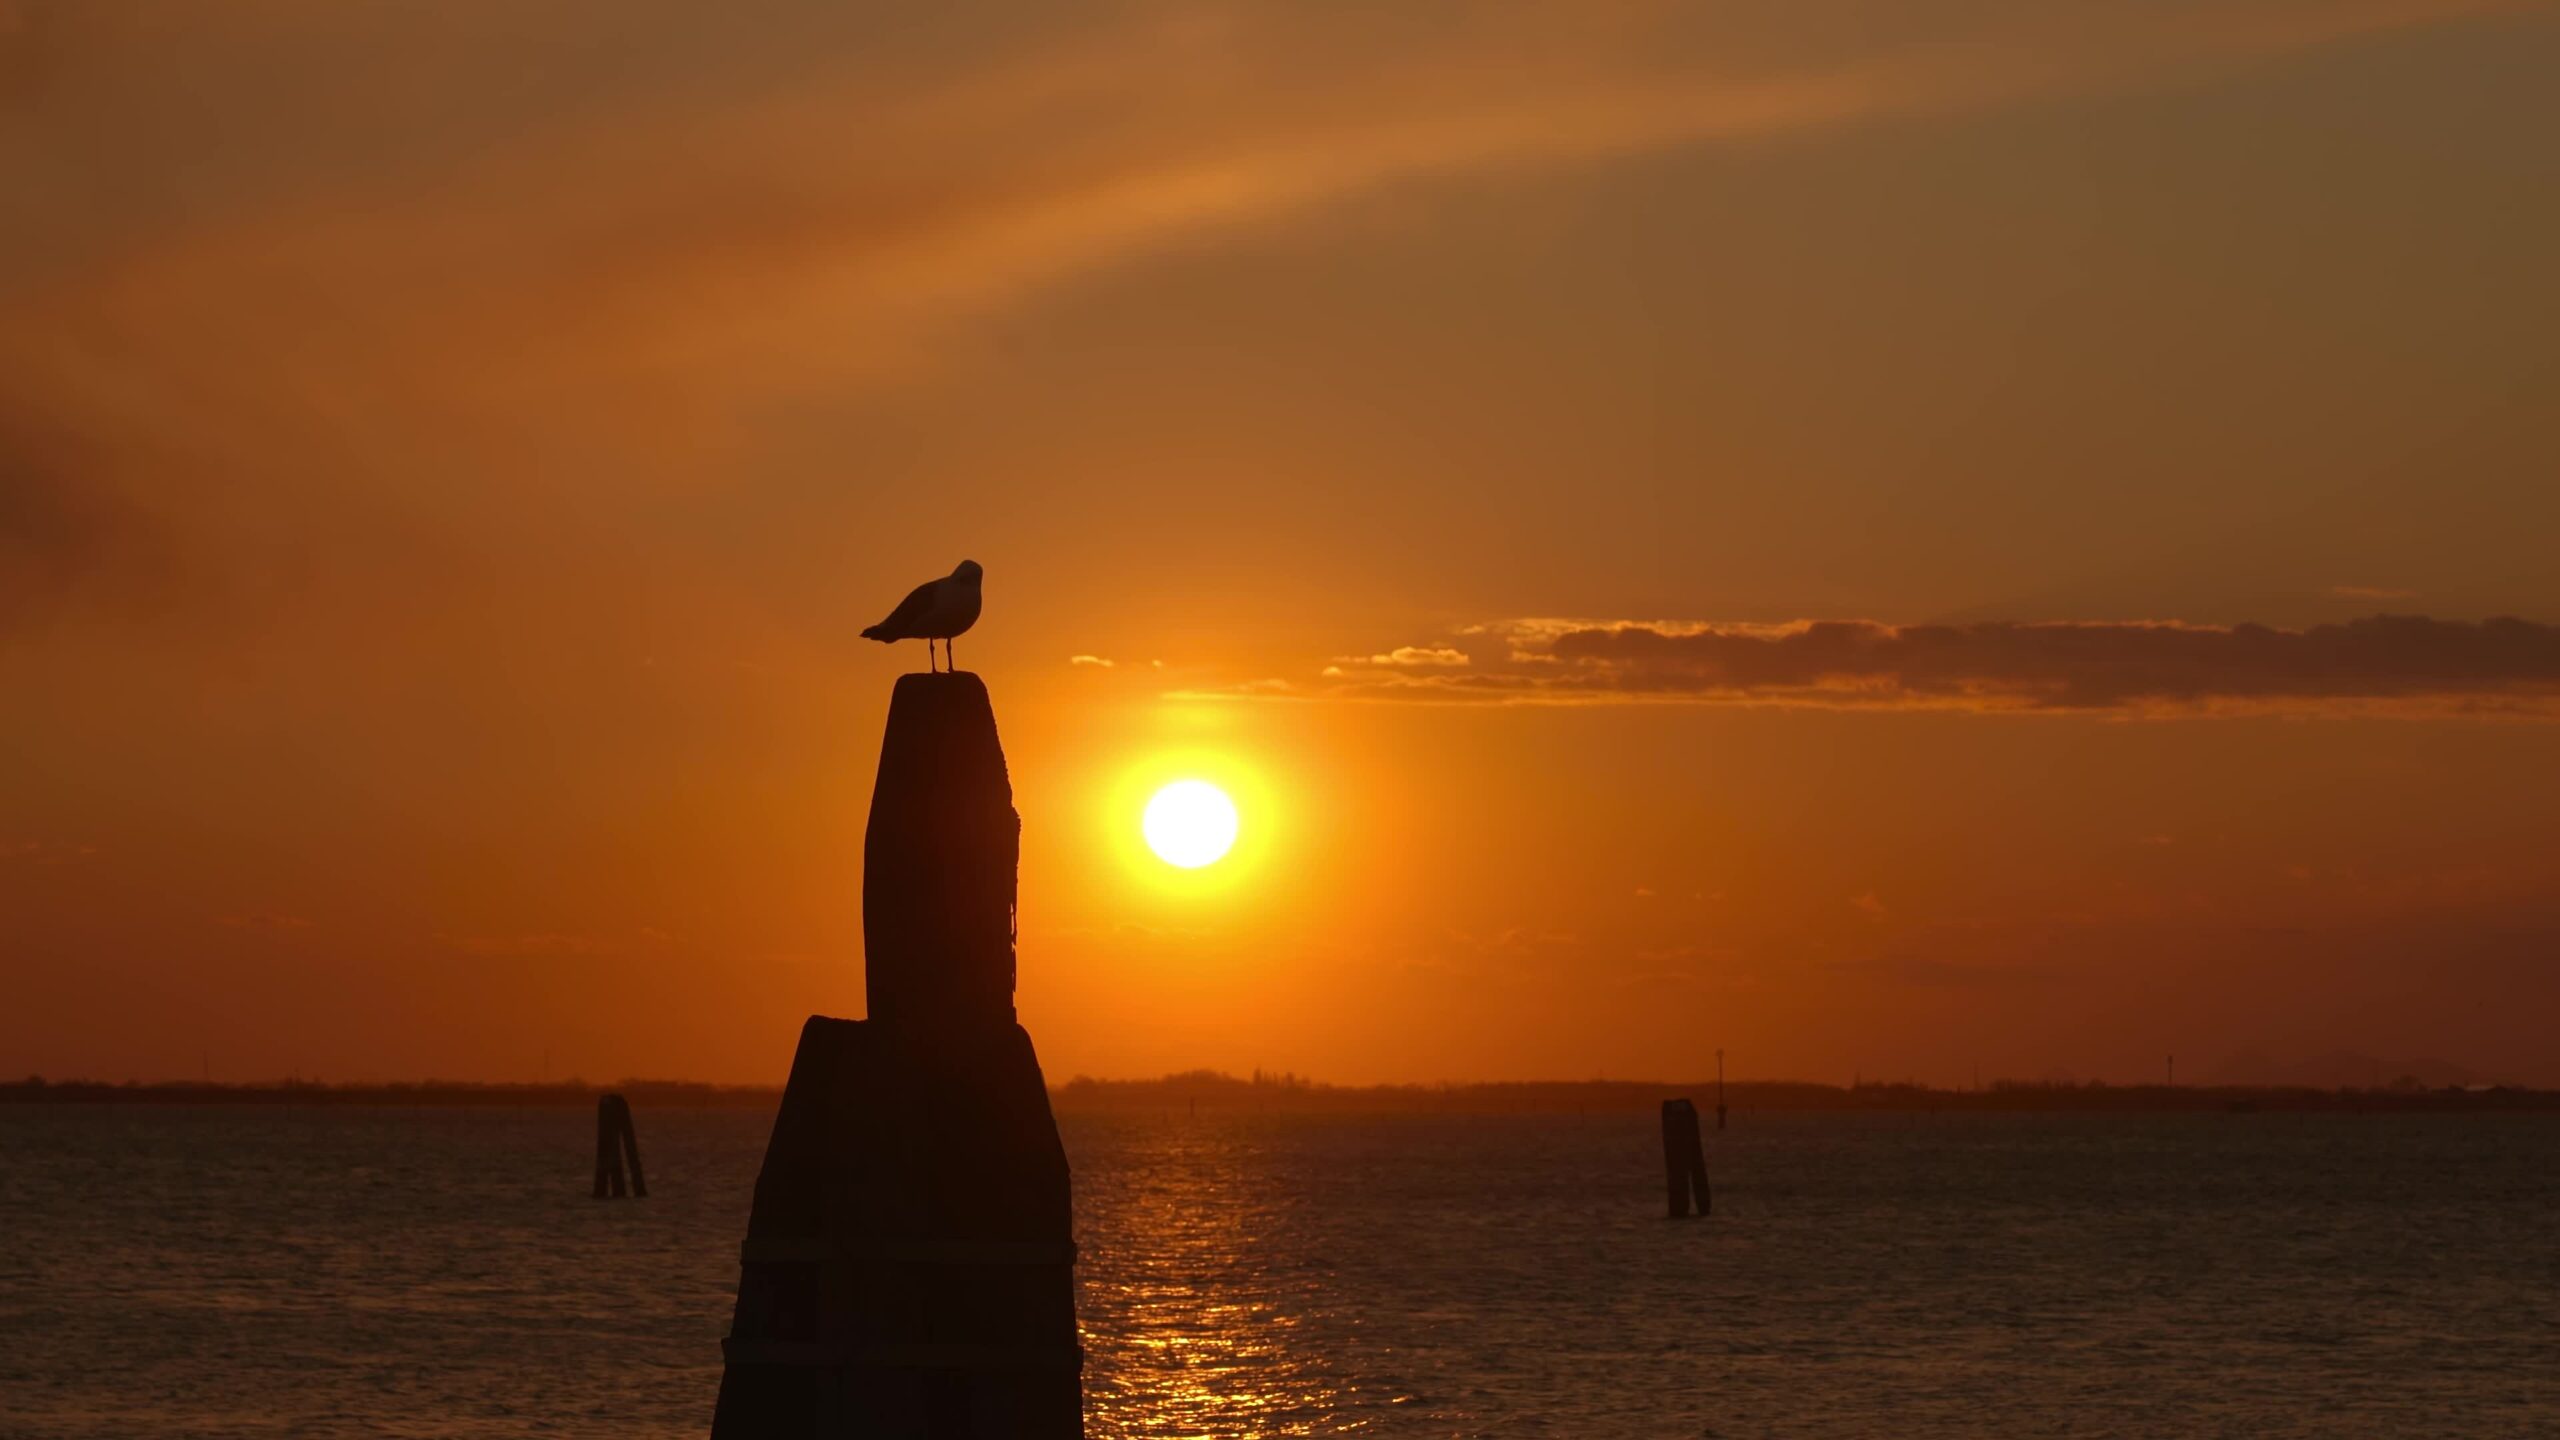 Bird standing on high pillar in Venetian lagoon at sunset